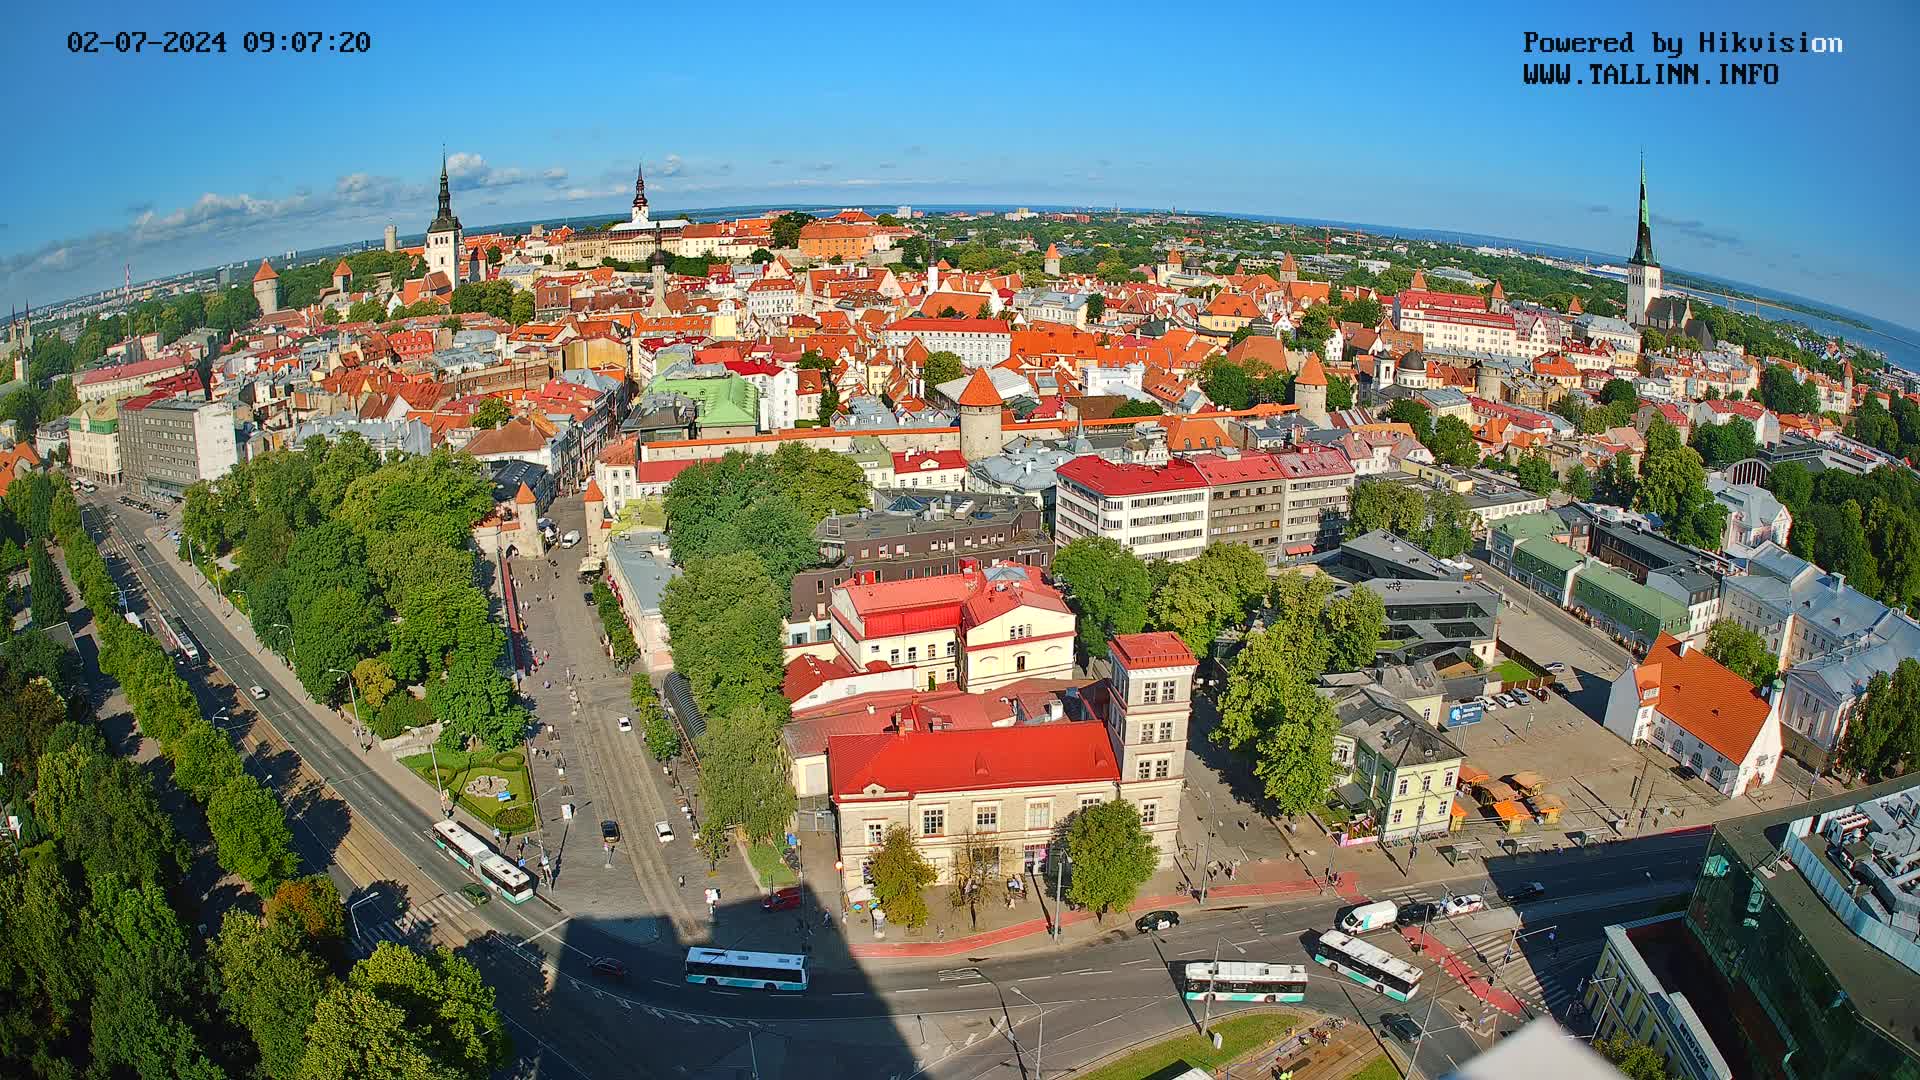 Tallinn Mar. 09:34